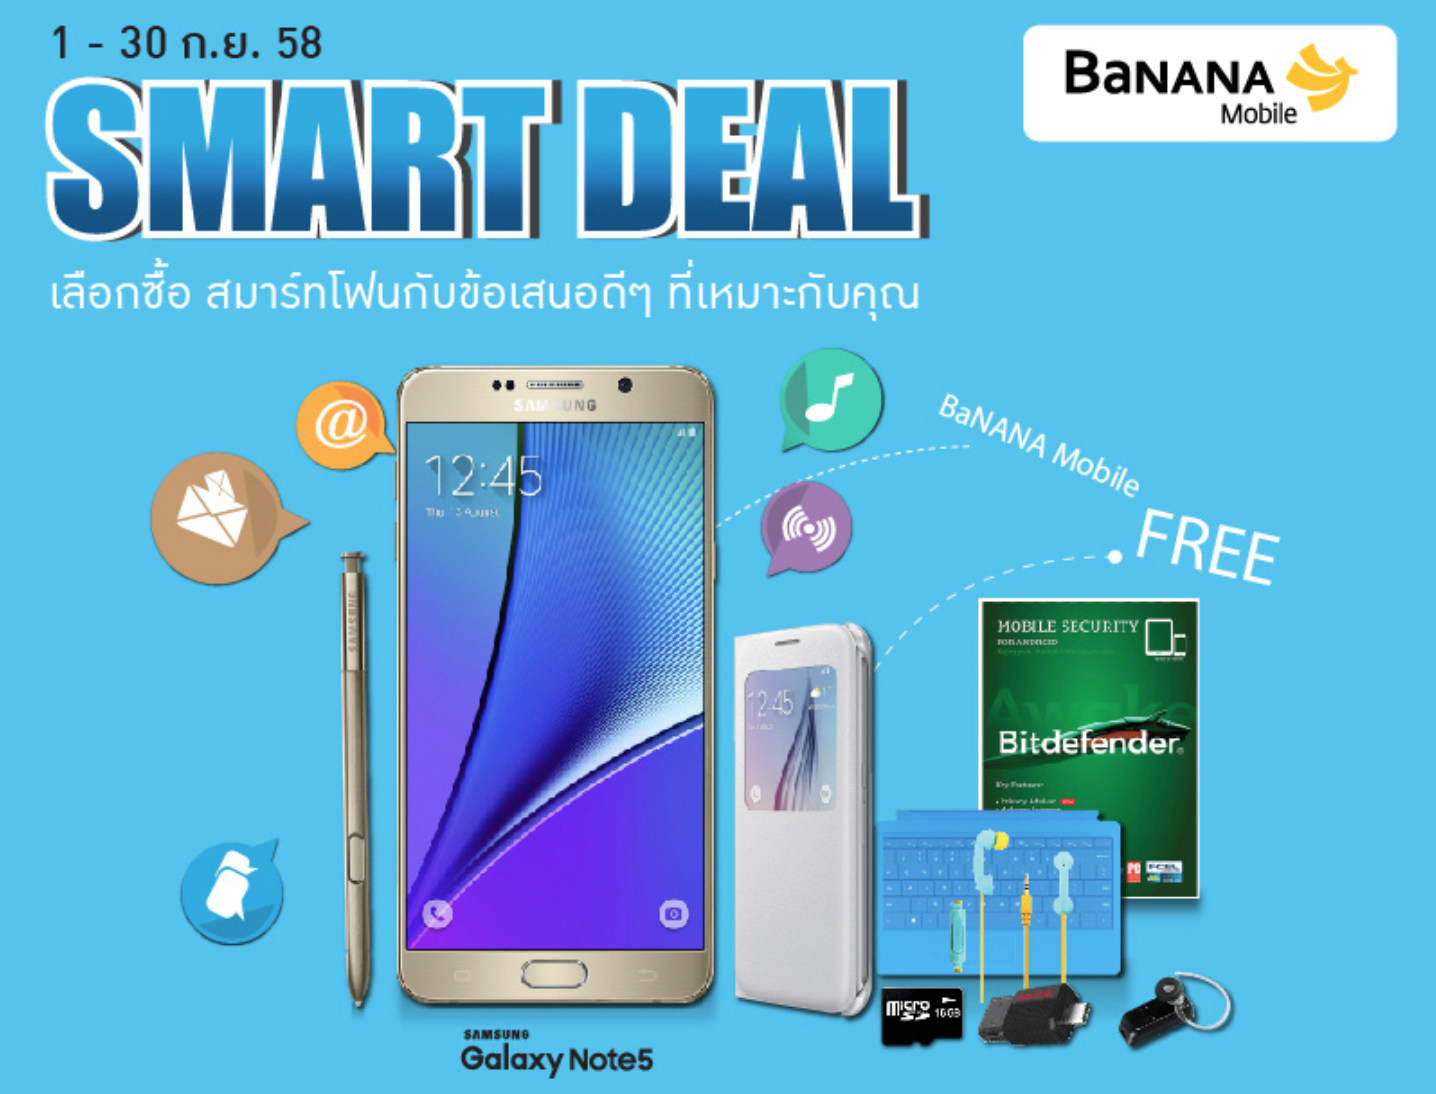 BananaIT SMART DEAL เลือกซื้อสมาร์ทโฟน แท็บเล็ต กับข้อเสนอดี ๆ ที่เหมาะกับคุณ